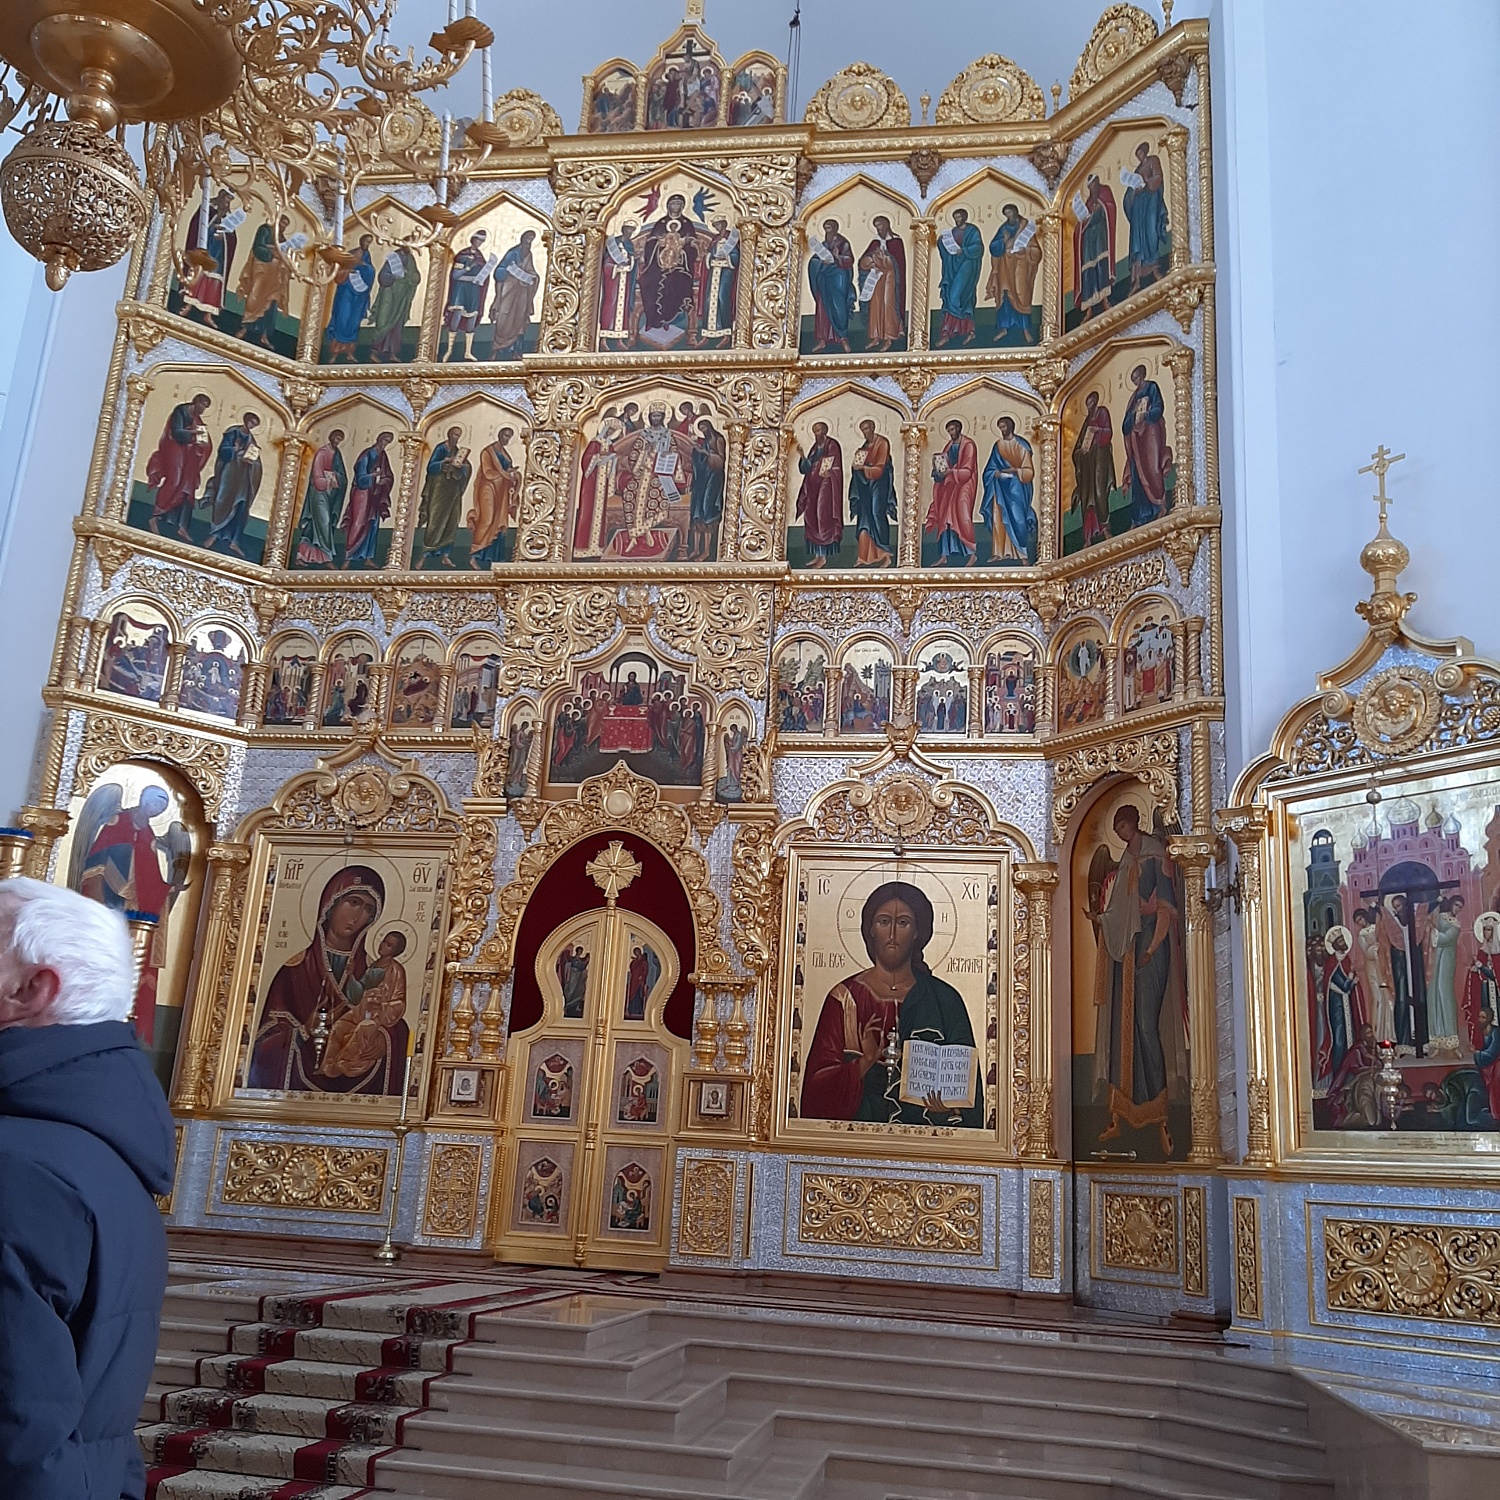 Белогорский Свято-Николаевский мужской монастырь